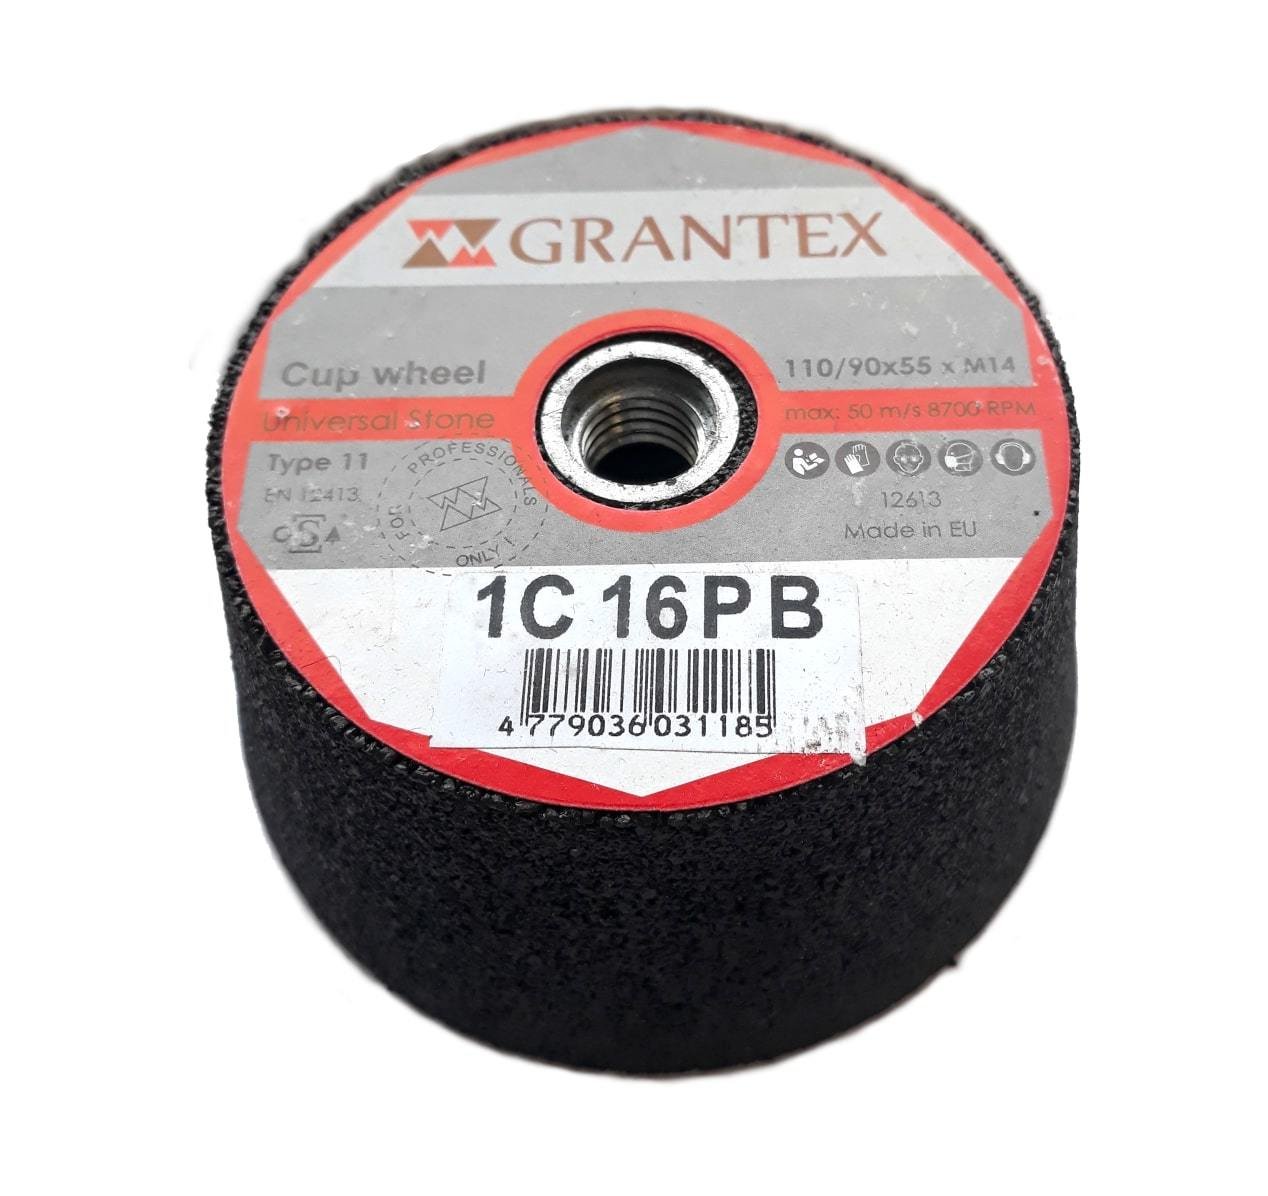 Betono šlifavimo puodas GRANTEX, 110/90 x 55 mm, C36, M14 sriegis